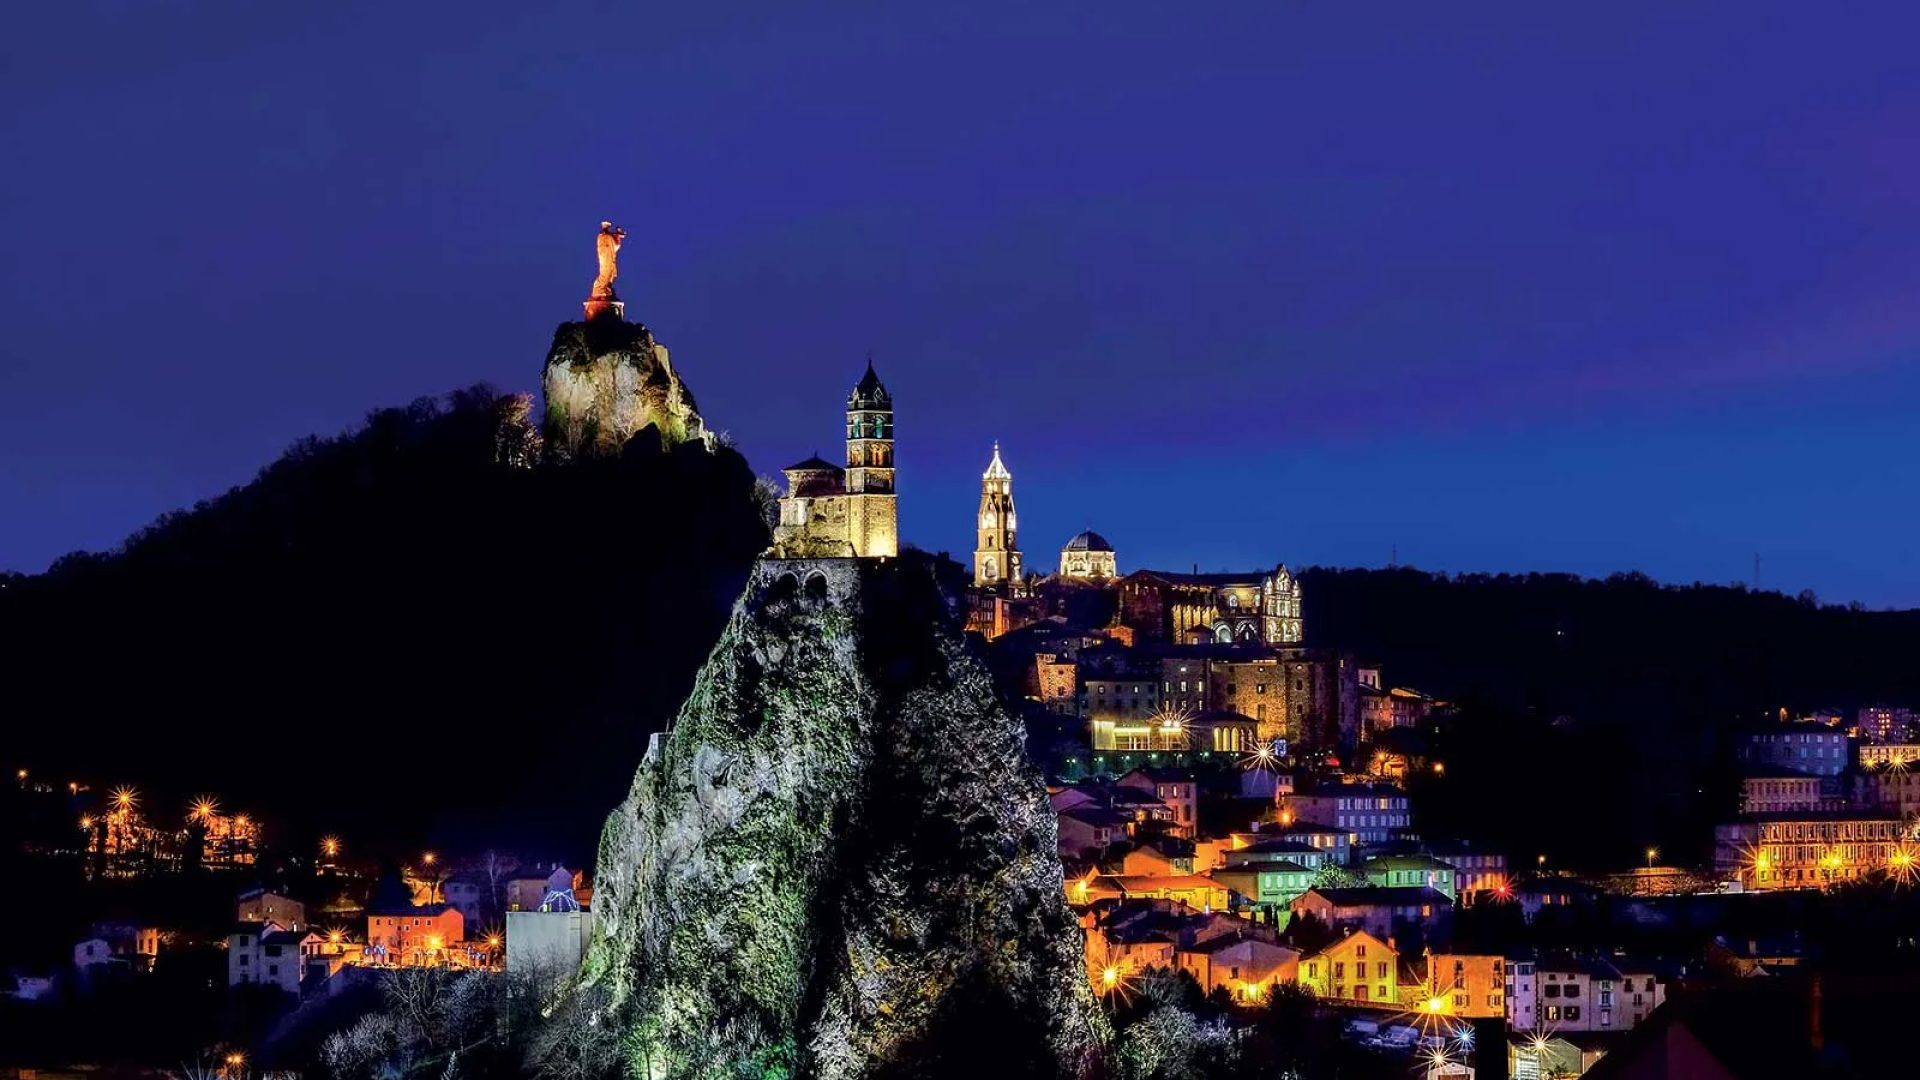 Vista nocturna de la Rocher Saint-Michel, la estatua de Notre-Dame de France y la ciudad de Puy-en-Velay